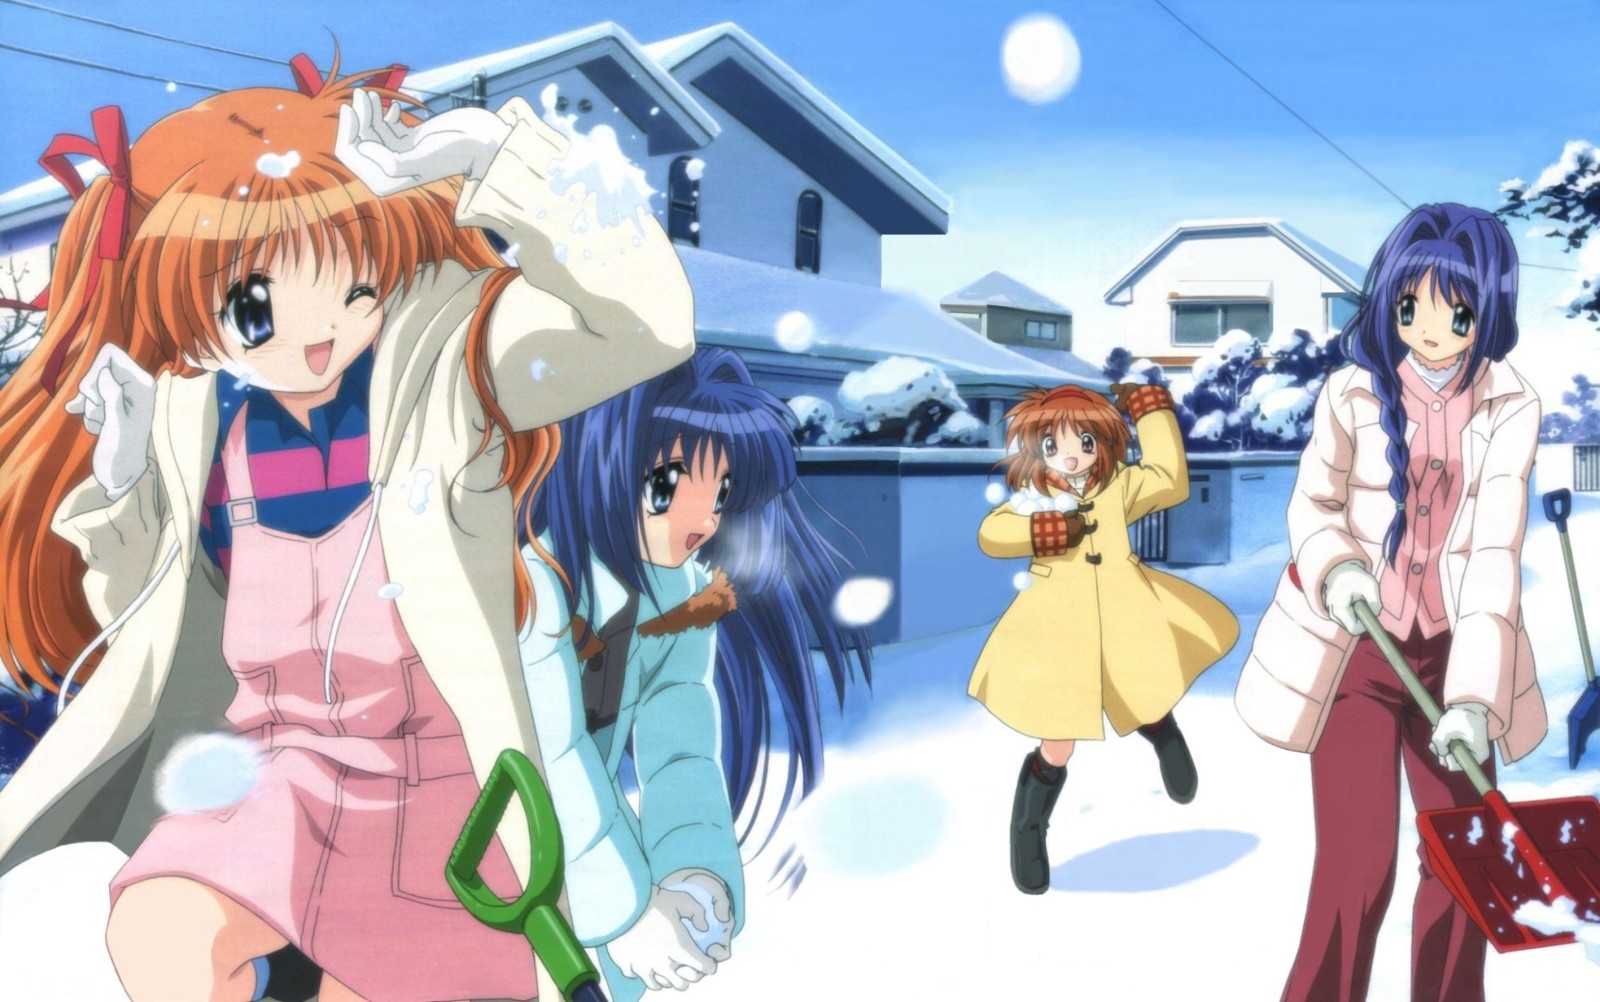 Anime 1600x1002 anime girls anime Kanon group of women snow winter women outdoors urban